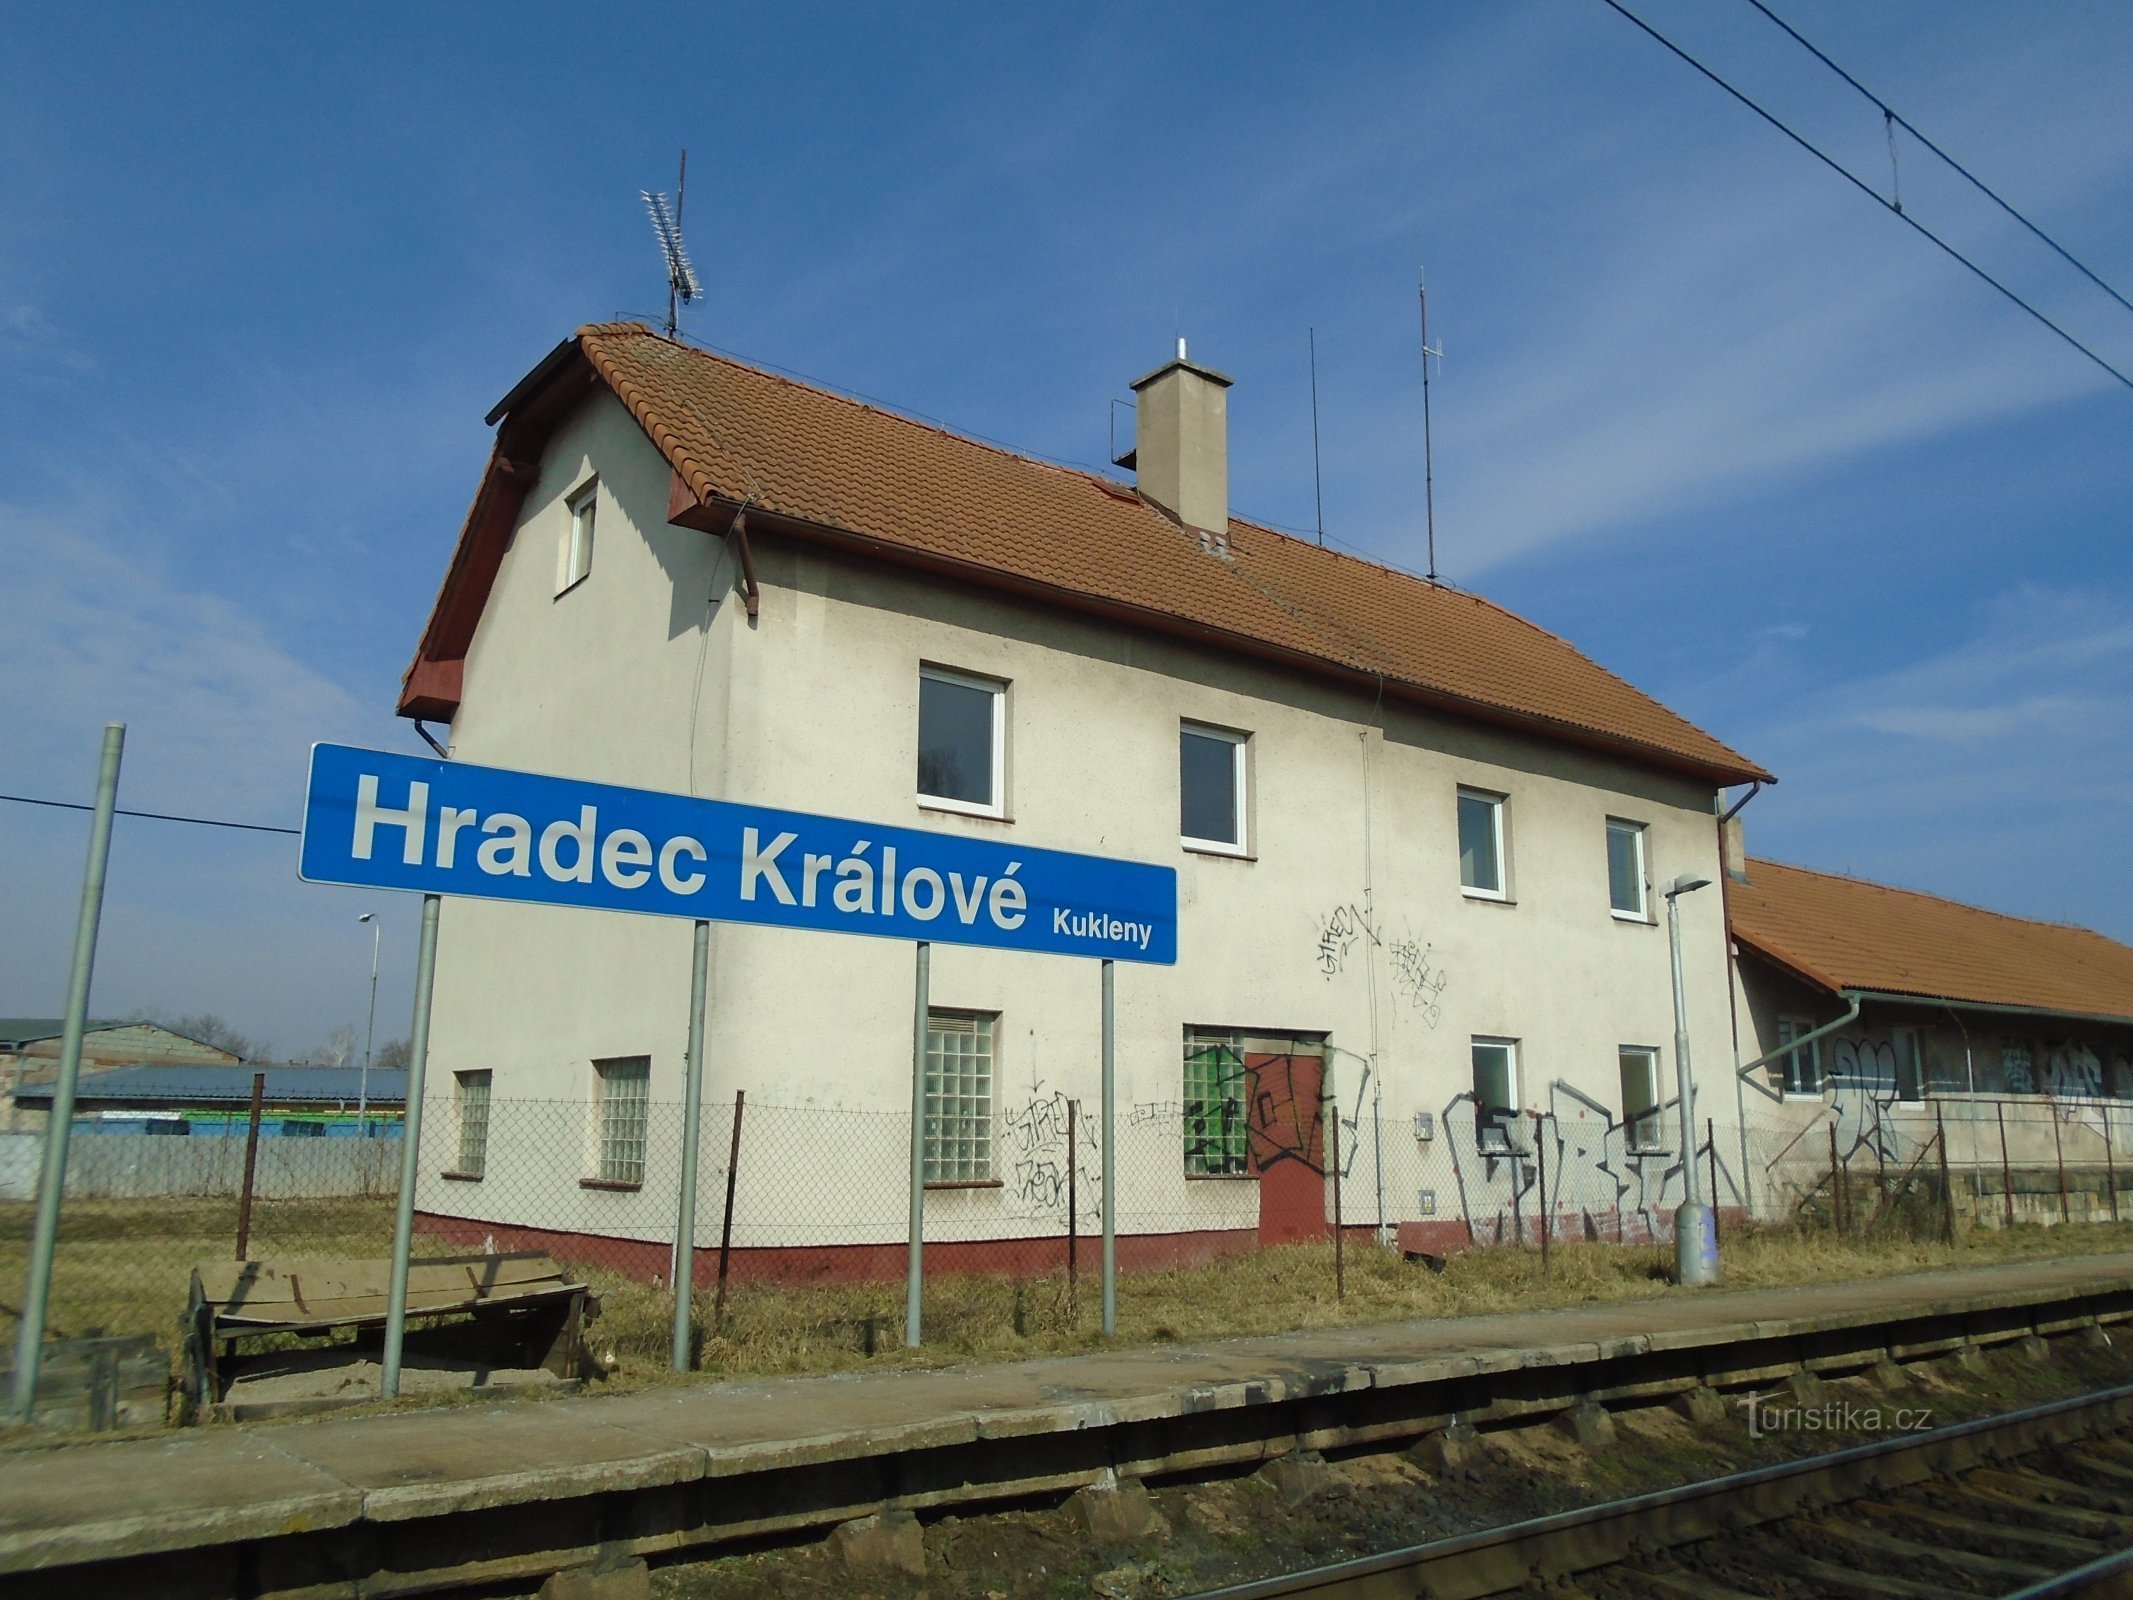 Nhà ga xe lửa rối cũ (Hradec Králové)